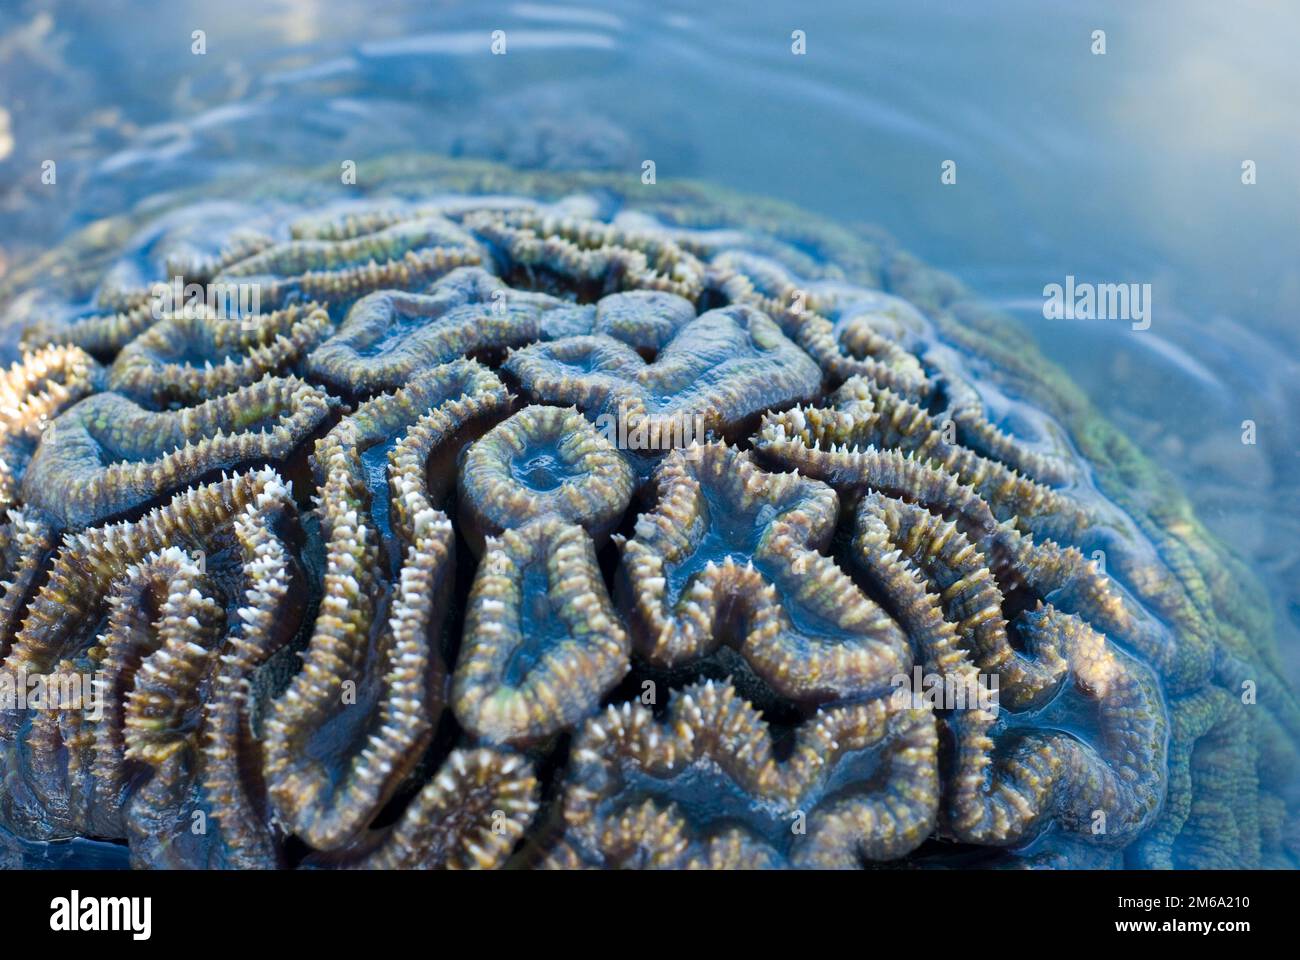 Brain coral Stock Photo